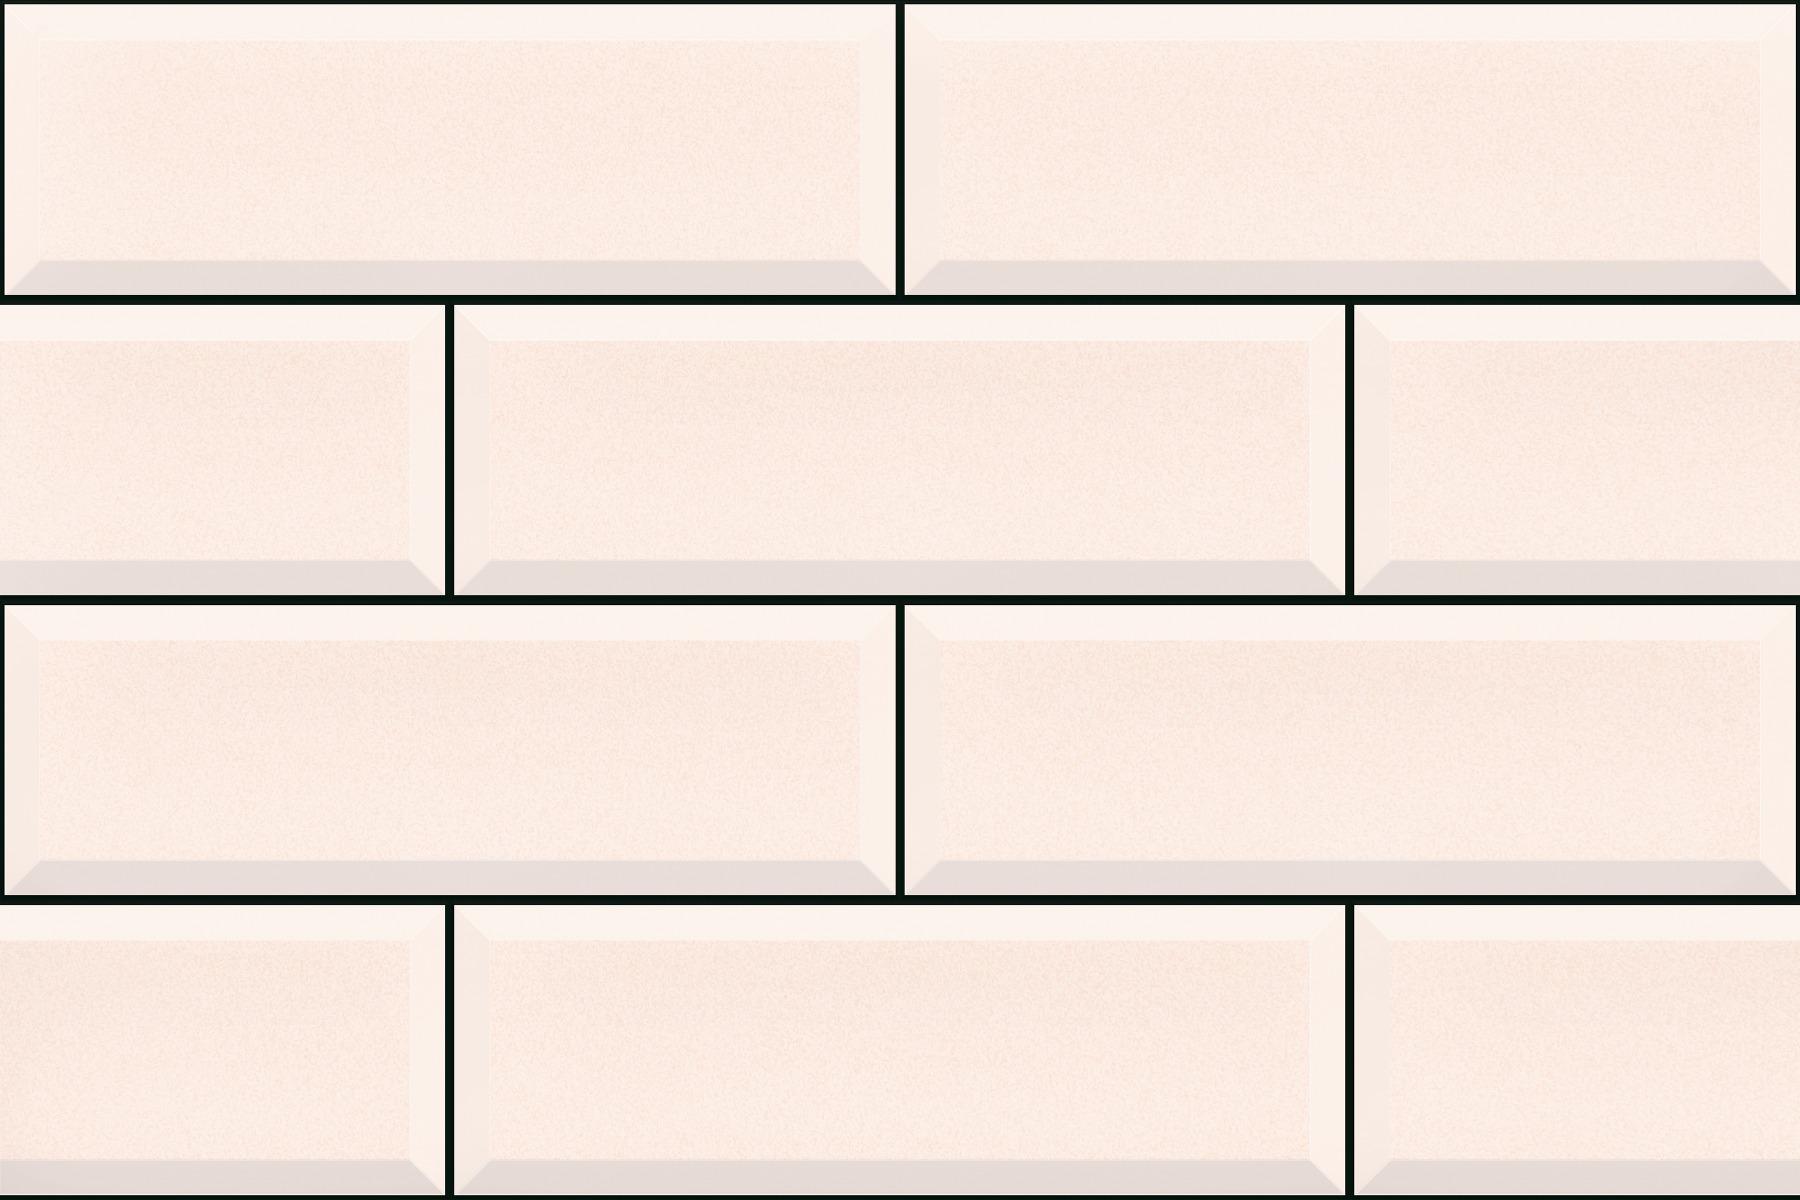 Plain Tiles for Bathroom Tiles, Living Room Tiles, Accent Tiles